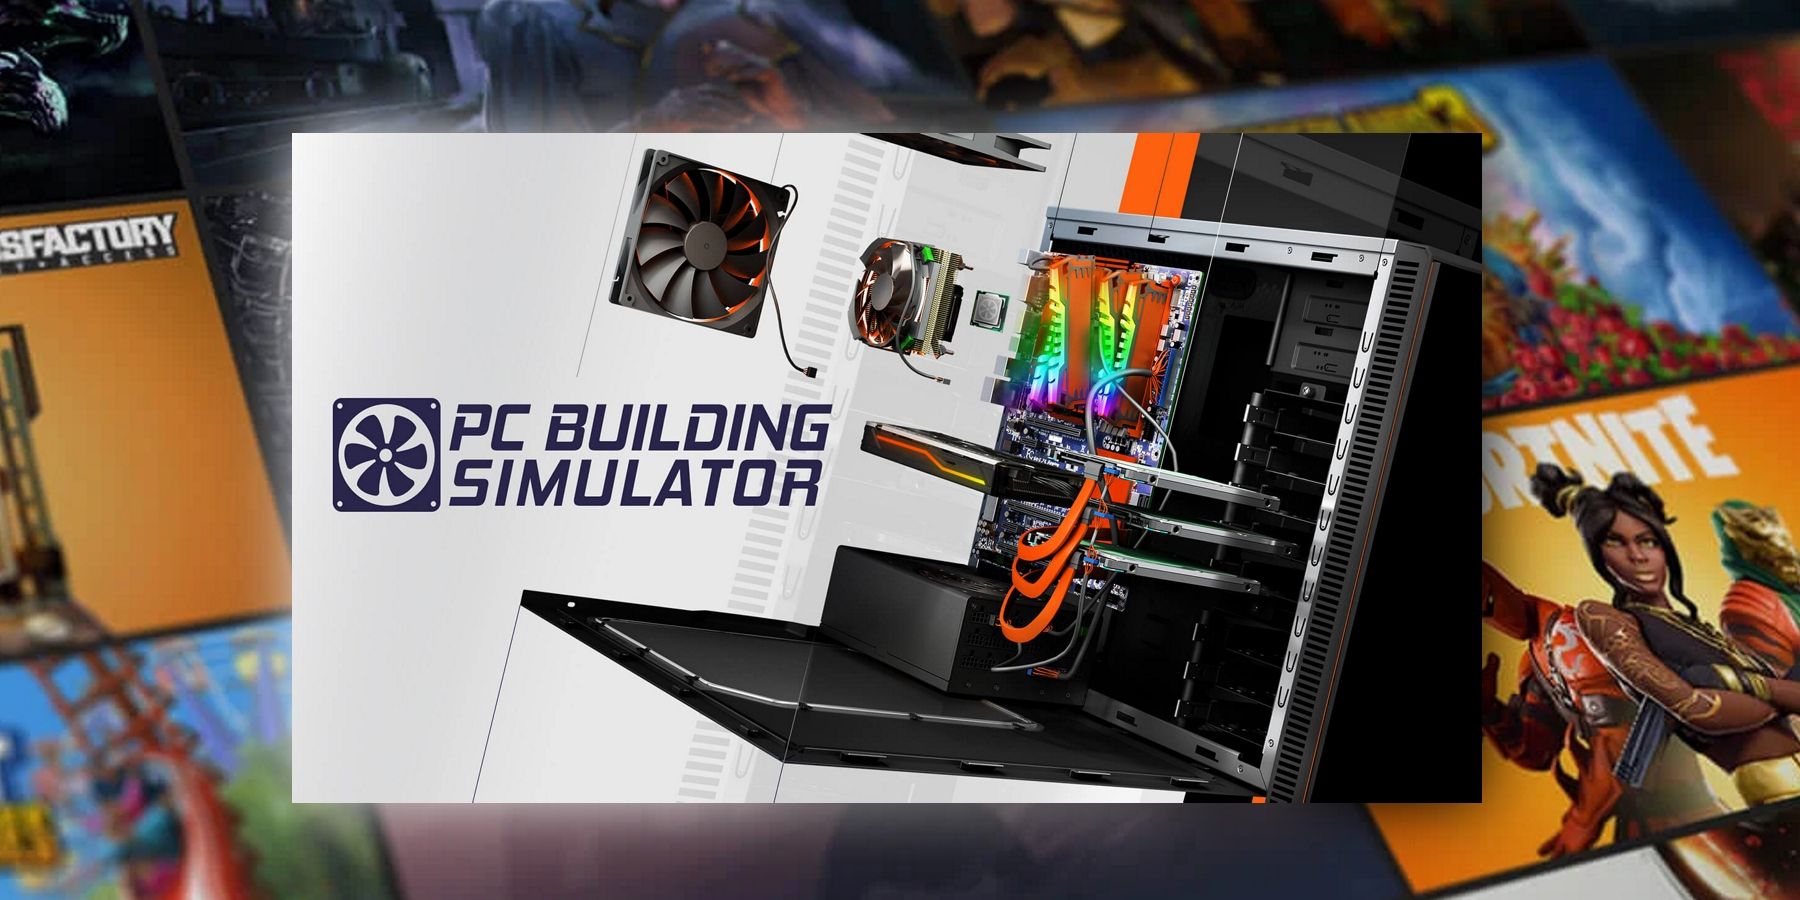 PC Building Simulator 2  Télécharger et acheter aujourd'hui - Epic Games  Store